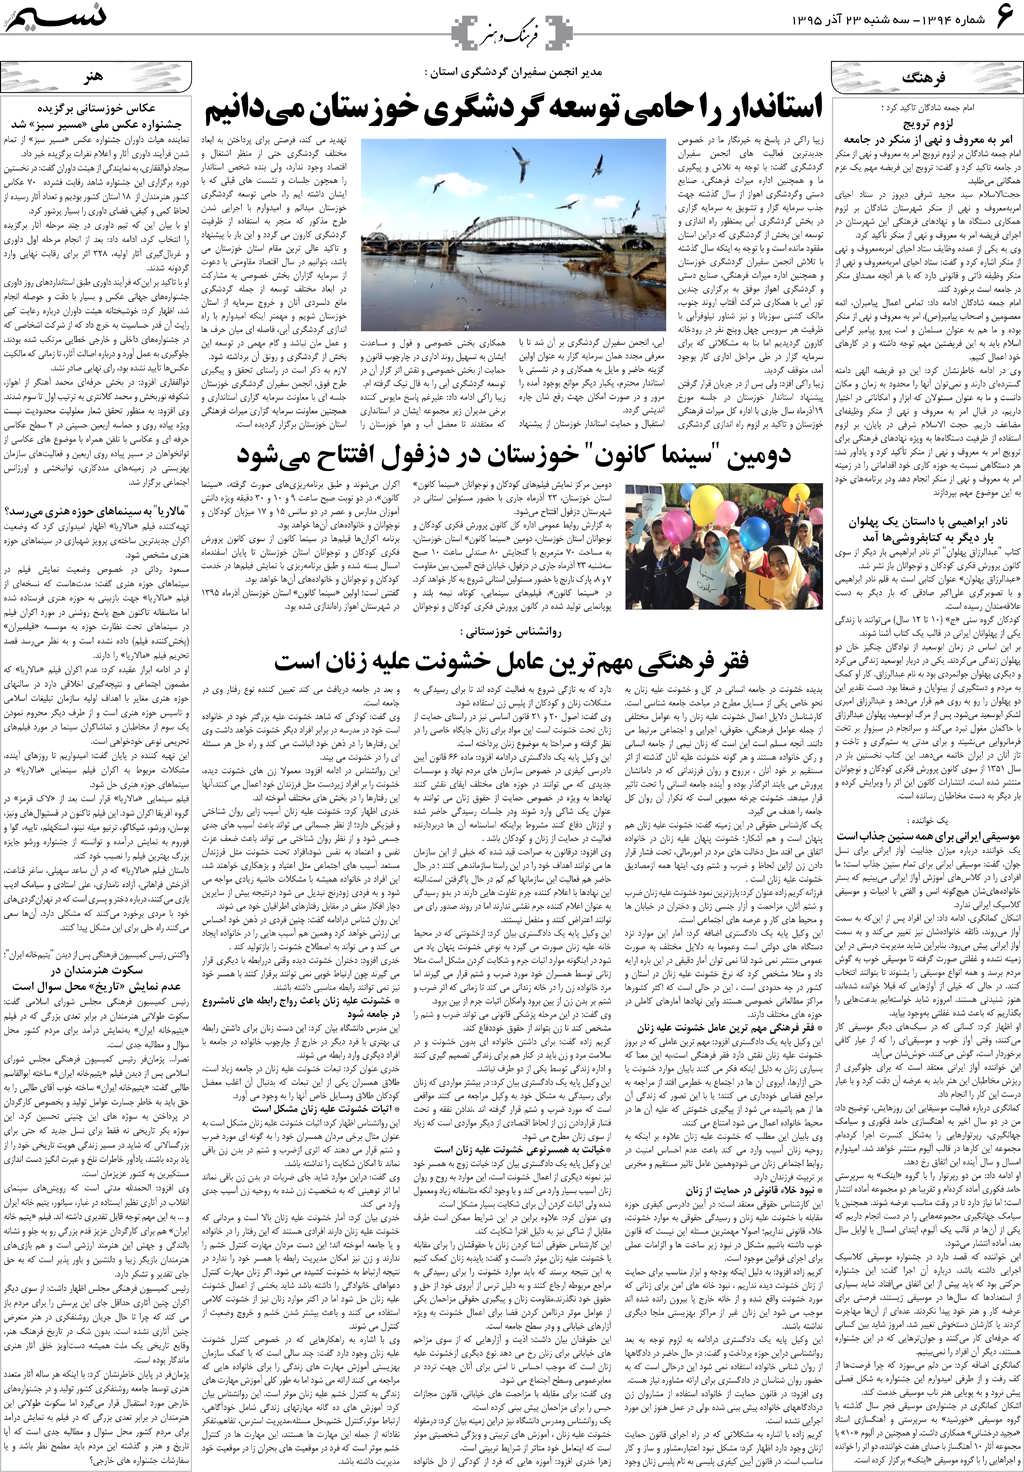 صفحه فرهنگ و هنر روزنامه نسیم شماره 1394